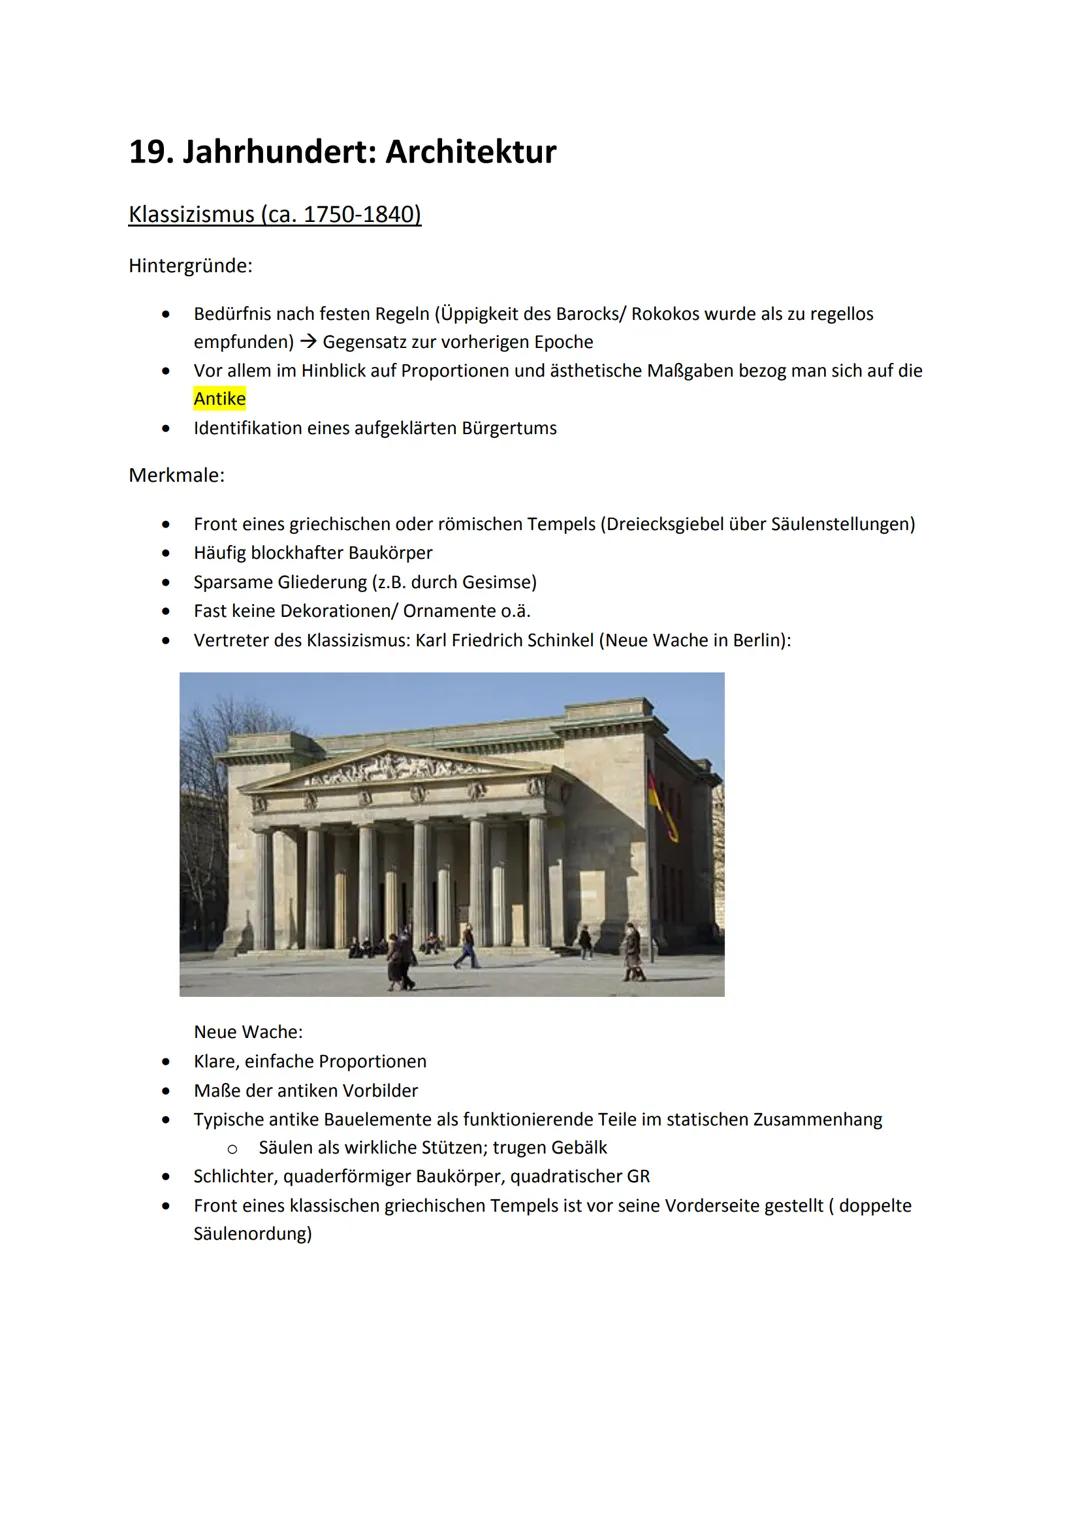 19. Jahrhundert: Architektur
Klassizismus (ca. 1750-1840)
Hintergründe:
Bedürfnis nach festen Regeln (Üppigkeit des Barocks/ Rokokos wurde a